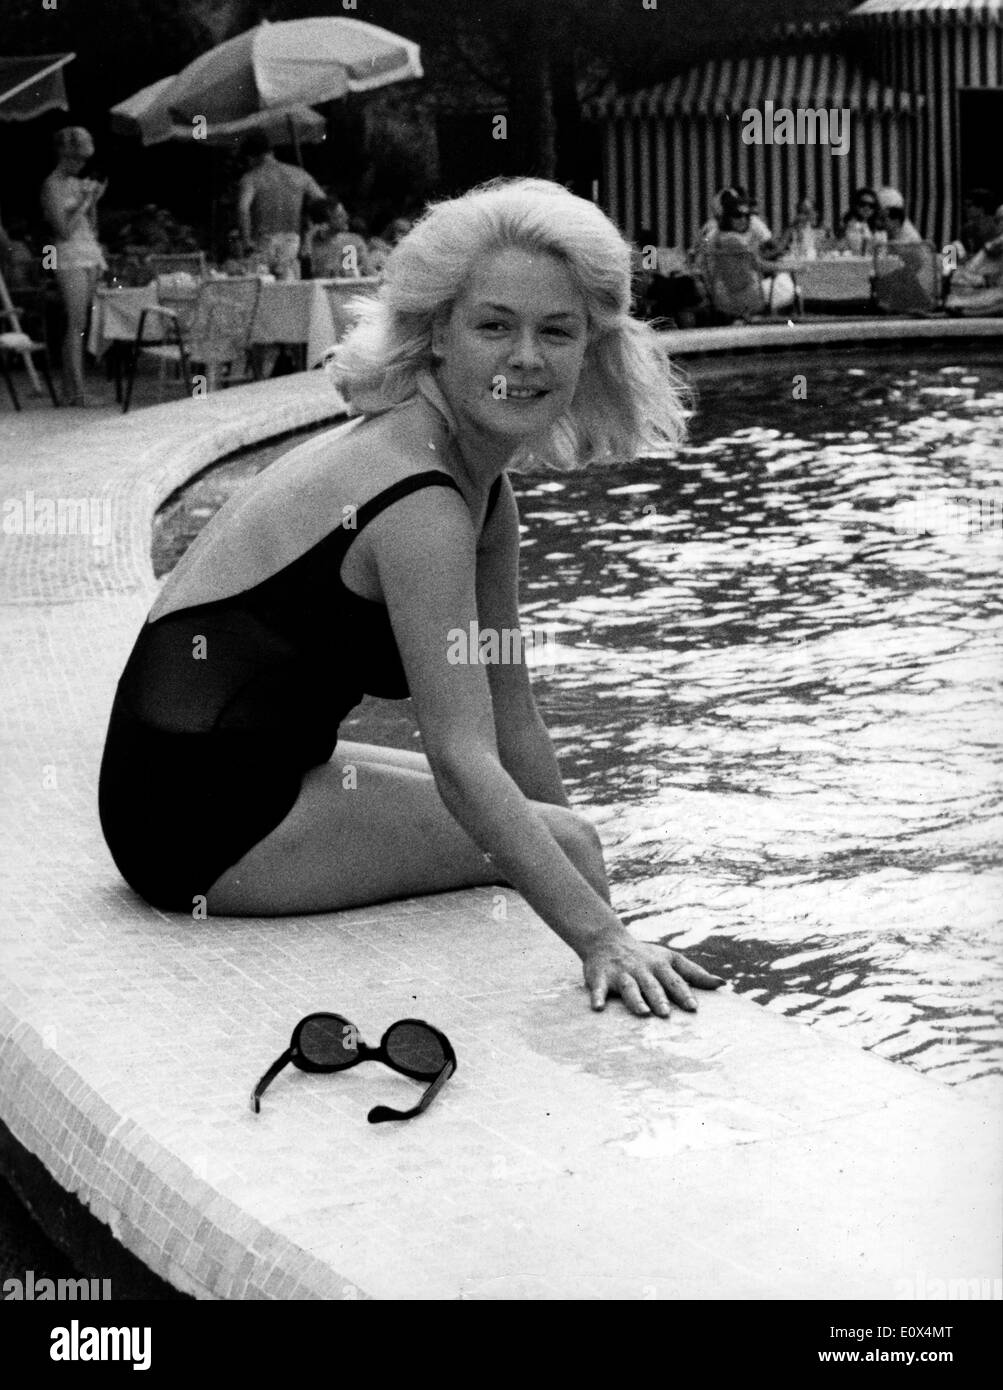 7. Mai 1965 ist - Rom, Italien - SANDRA DEE in Rom, die Rolle des Films "A Mann könnte getötet" zu machen. Sie posiert in einem Pool eines Hotels in Rom. Schauspielerin Sandra Dee, die blonde Schönheit, die ein großes Teenies-Publikum in den 1960er Jahren mit Filmen wie "Gidget '' und '' Tammy und der Doktor '' angezogen und hatte eine Headliner Ehe mit Pop-Sänger Bobby Darin, starb 20. Februar 2005 in Los Angeles. Sie war 62. Stockfoto